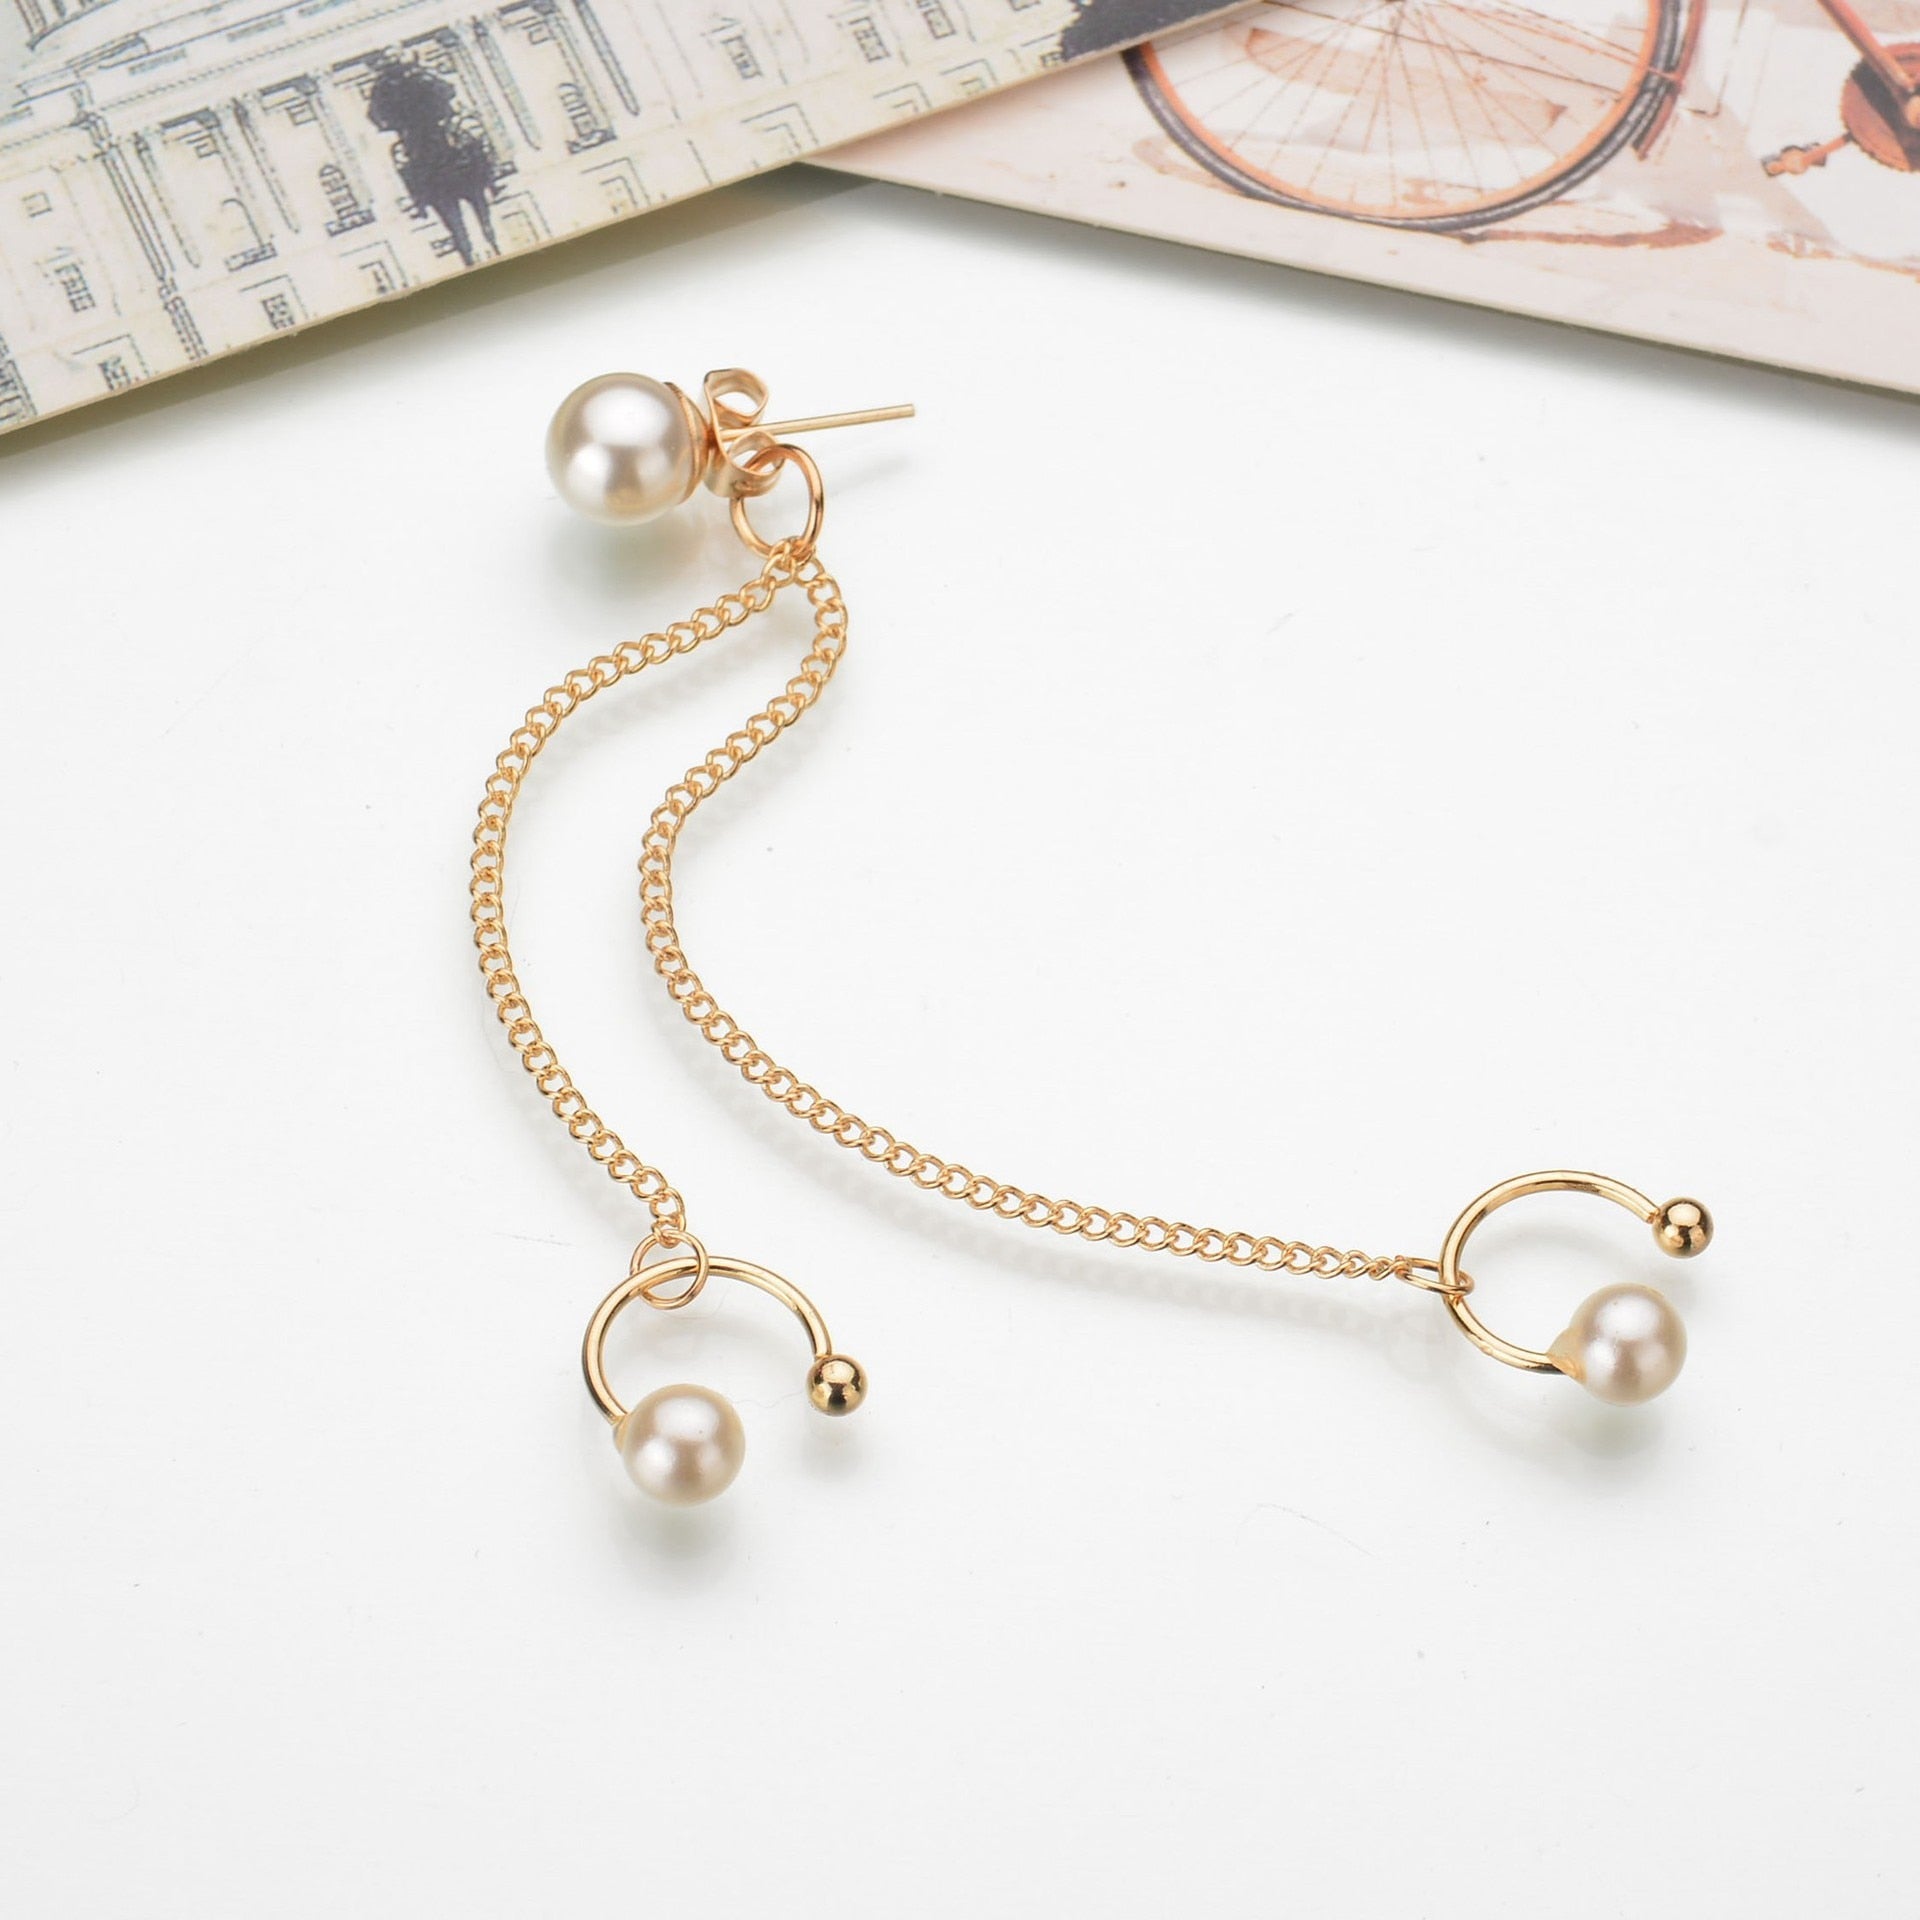 (1pcs) Fashion Earrings Jewelry Imitation Pearl Earrings For Women